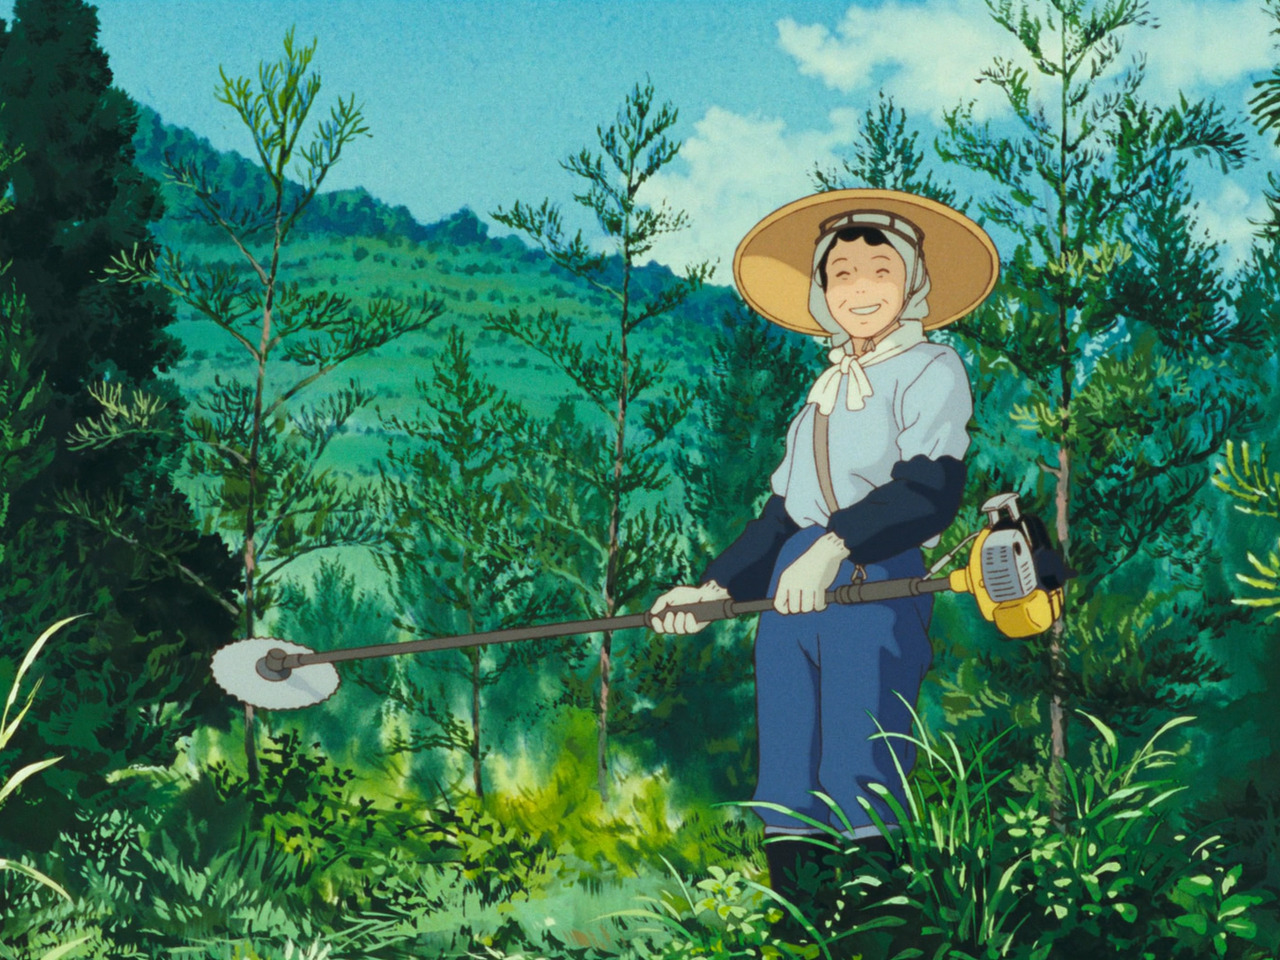 “Vì thiên nhiên chính là nơi con trẻ và chúng ta đã, đang sống”: Ngẫm nghĩ về thế giới hoạt hình Studio Ghibli